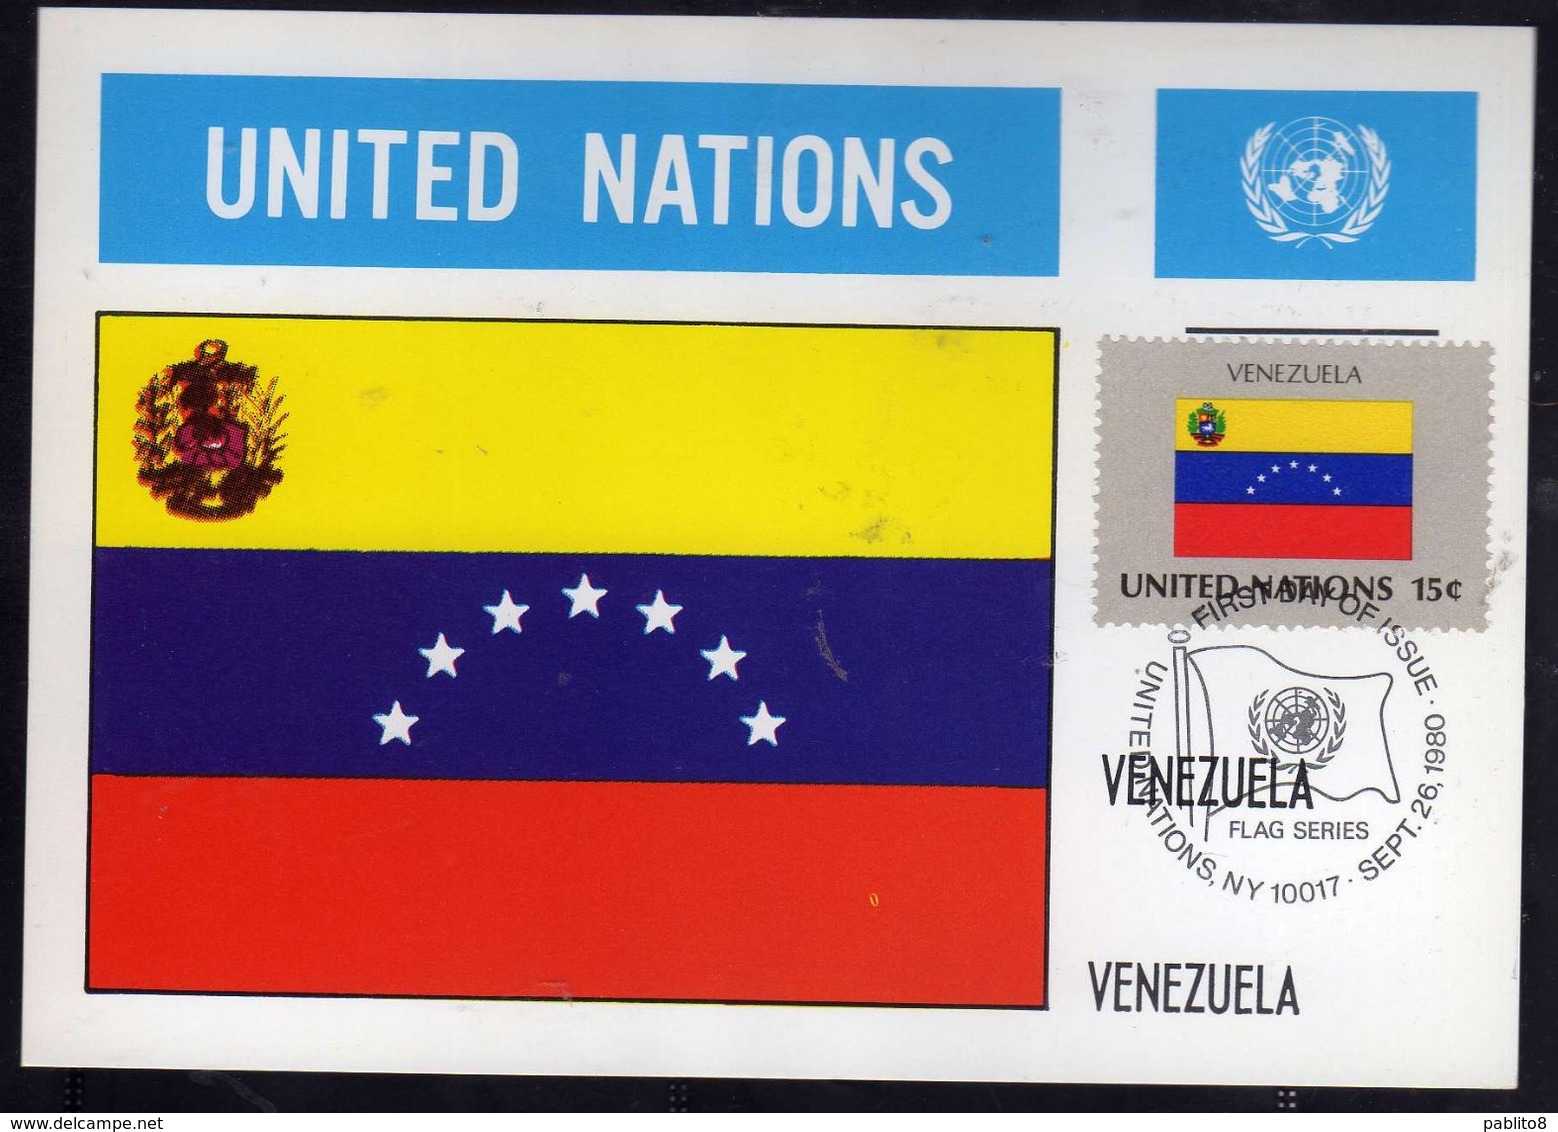 UNITED NATIONS NEW YORK ONU UN UNO 26 9 1980 FLAGS VENEZUELA FDC MAXI CARD CARTOLINA MAXIMUM - Cartes-maximum